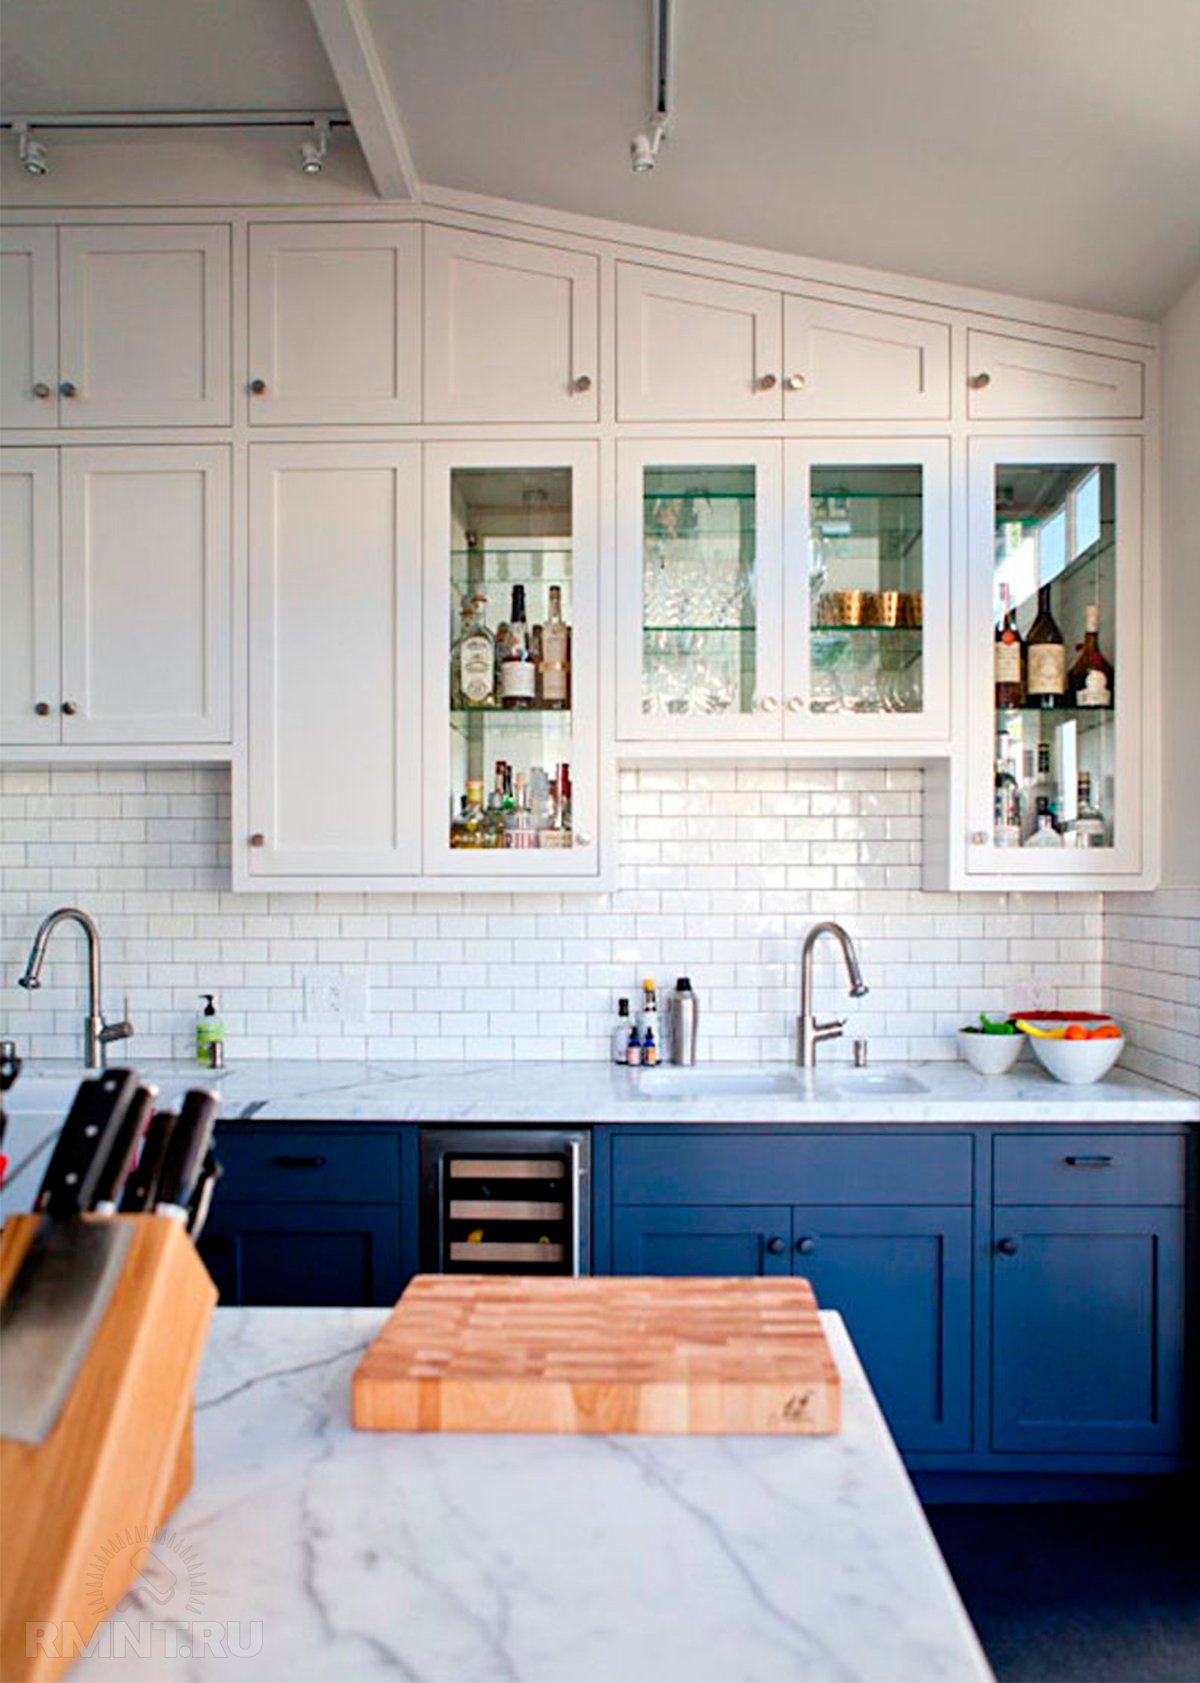 Фотоподборка и особенности кухонь в скандинавском стиле идеи для дома,интерьер и дизайн